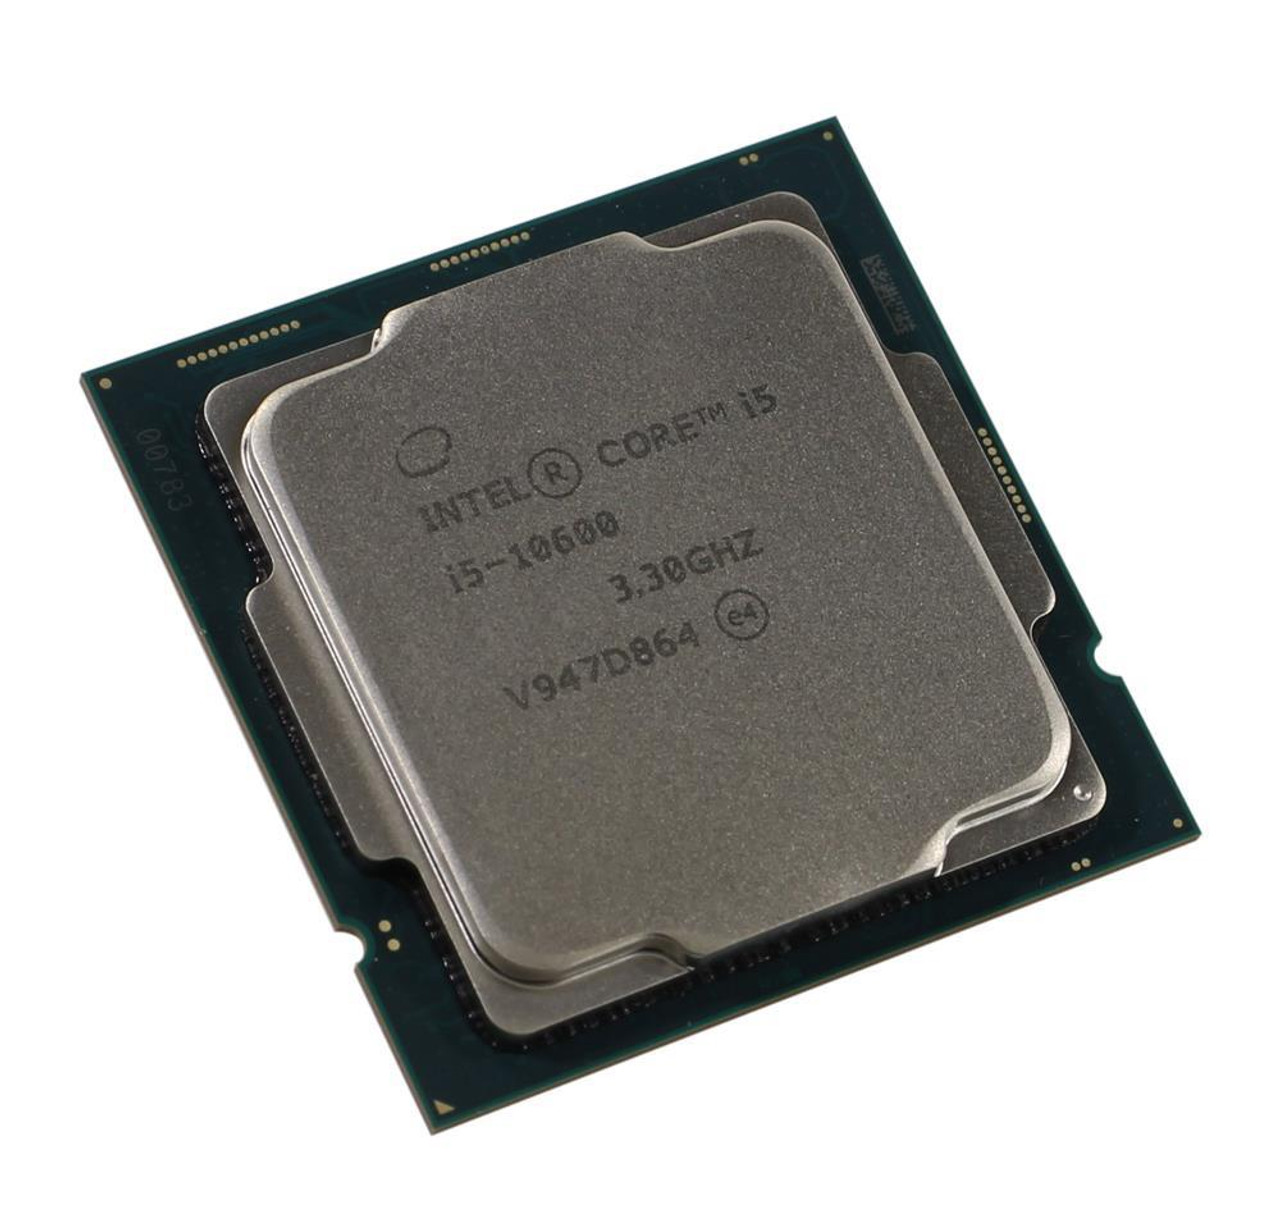 Intel Core i5-10600 - Core i5 10th Gen Comet Lake 6-Core 3.3 GHz LGA 1200  65W Intel UHD Graphics 630 Desktop Processor - BX8070110600 